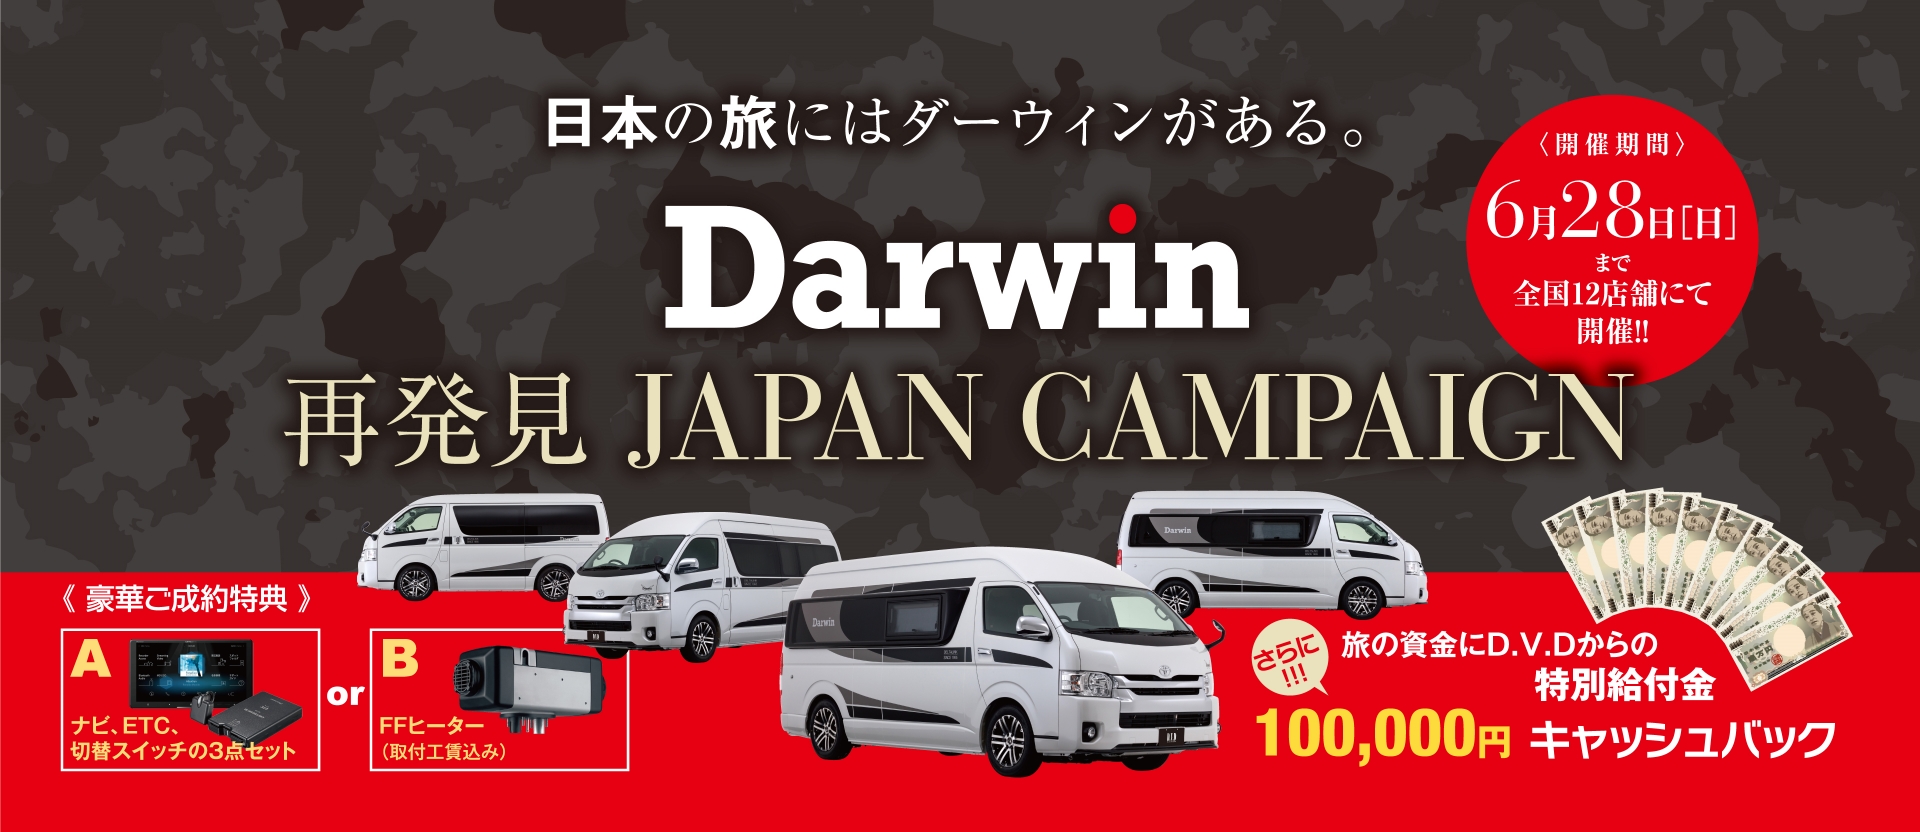 ダーウィン 「再発見ジャパン」キャンペーン